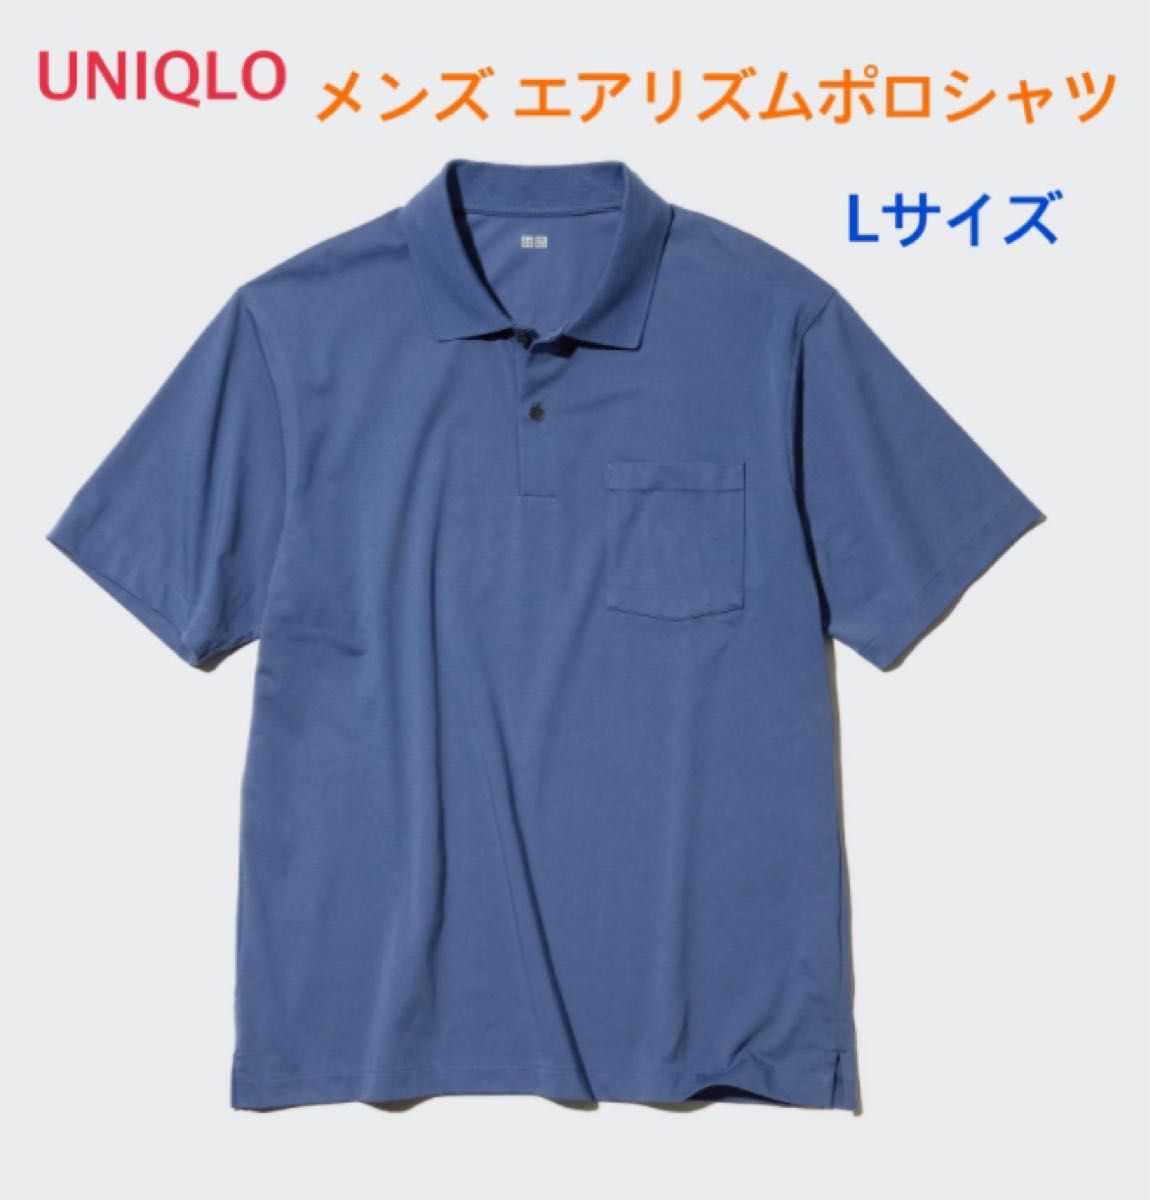 UNIQLO ポロシャツ ブルー L